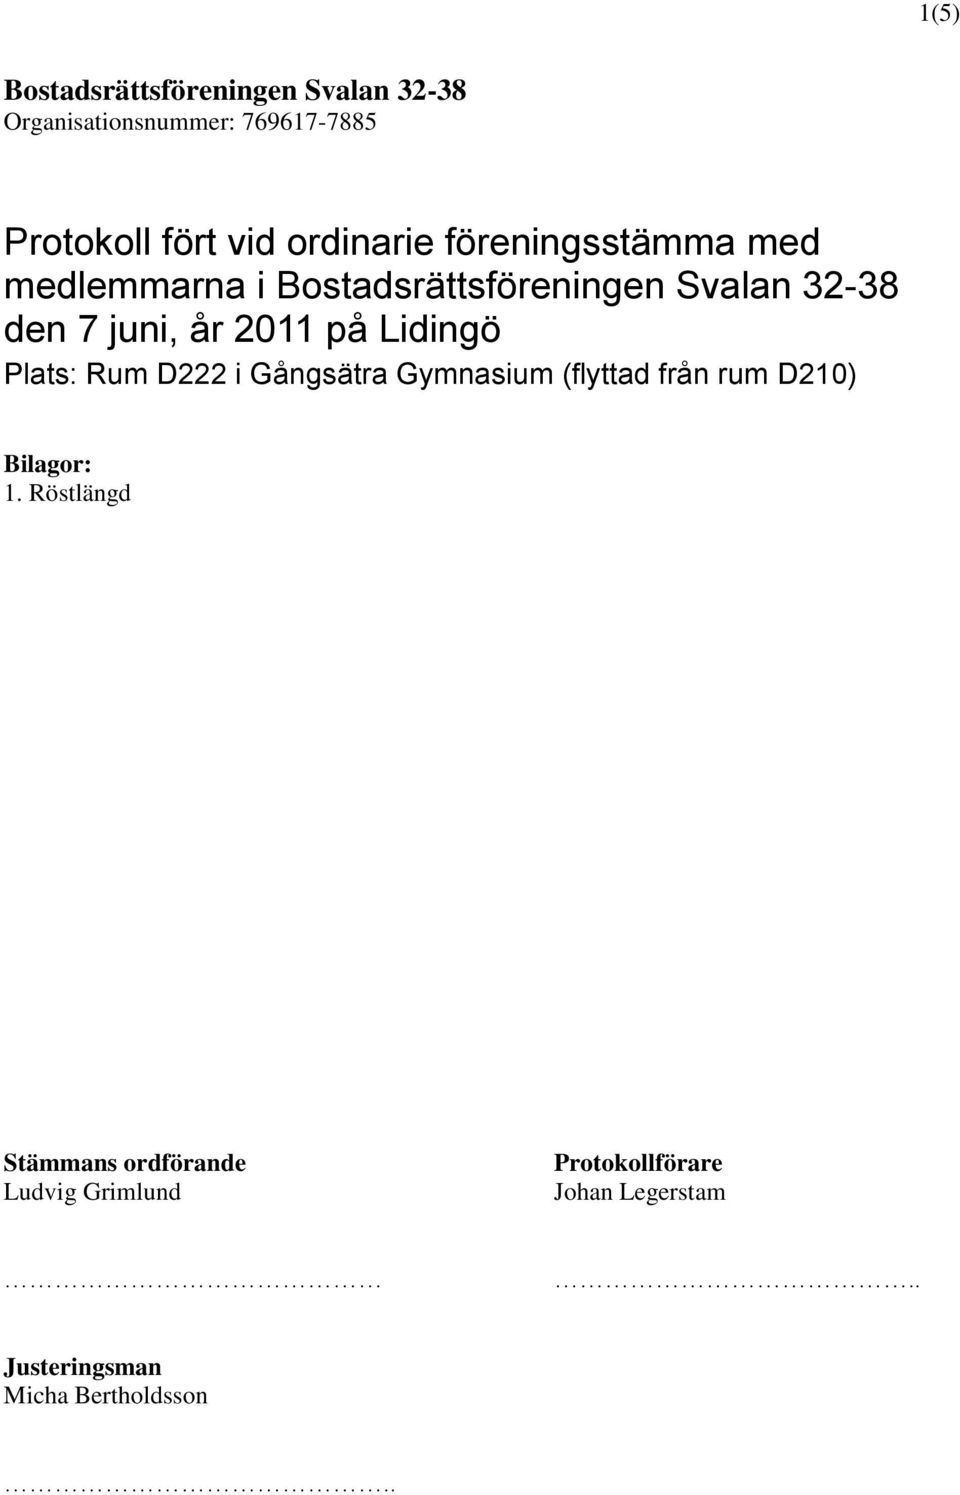 32-38 den 7 juni, år 2011 på Lidingö Plats: Rum D222 i Gångsätra Gymnasium (flyttad